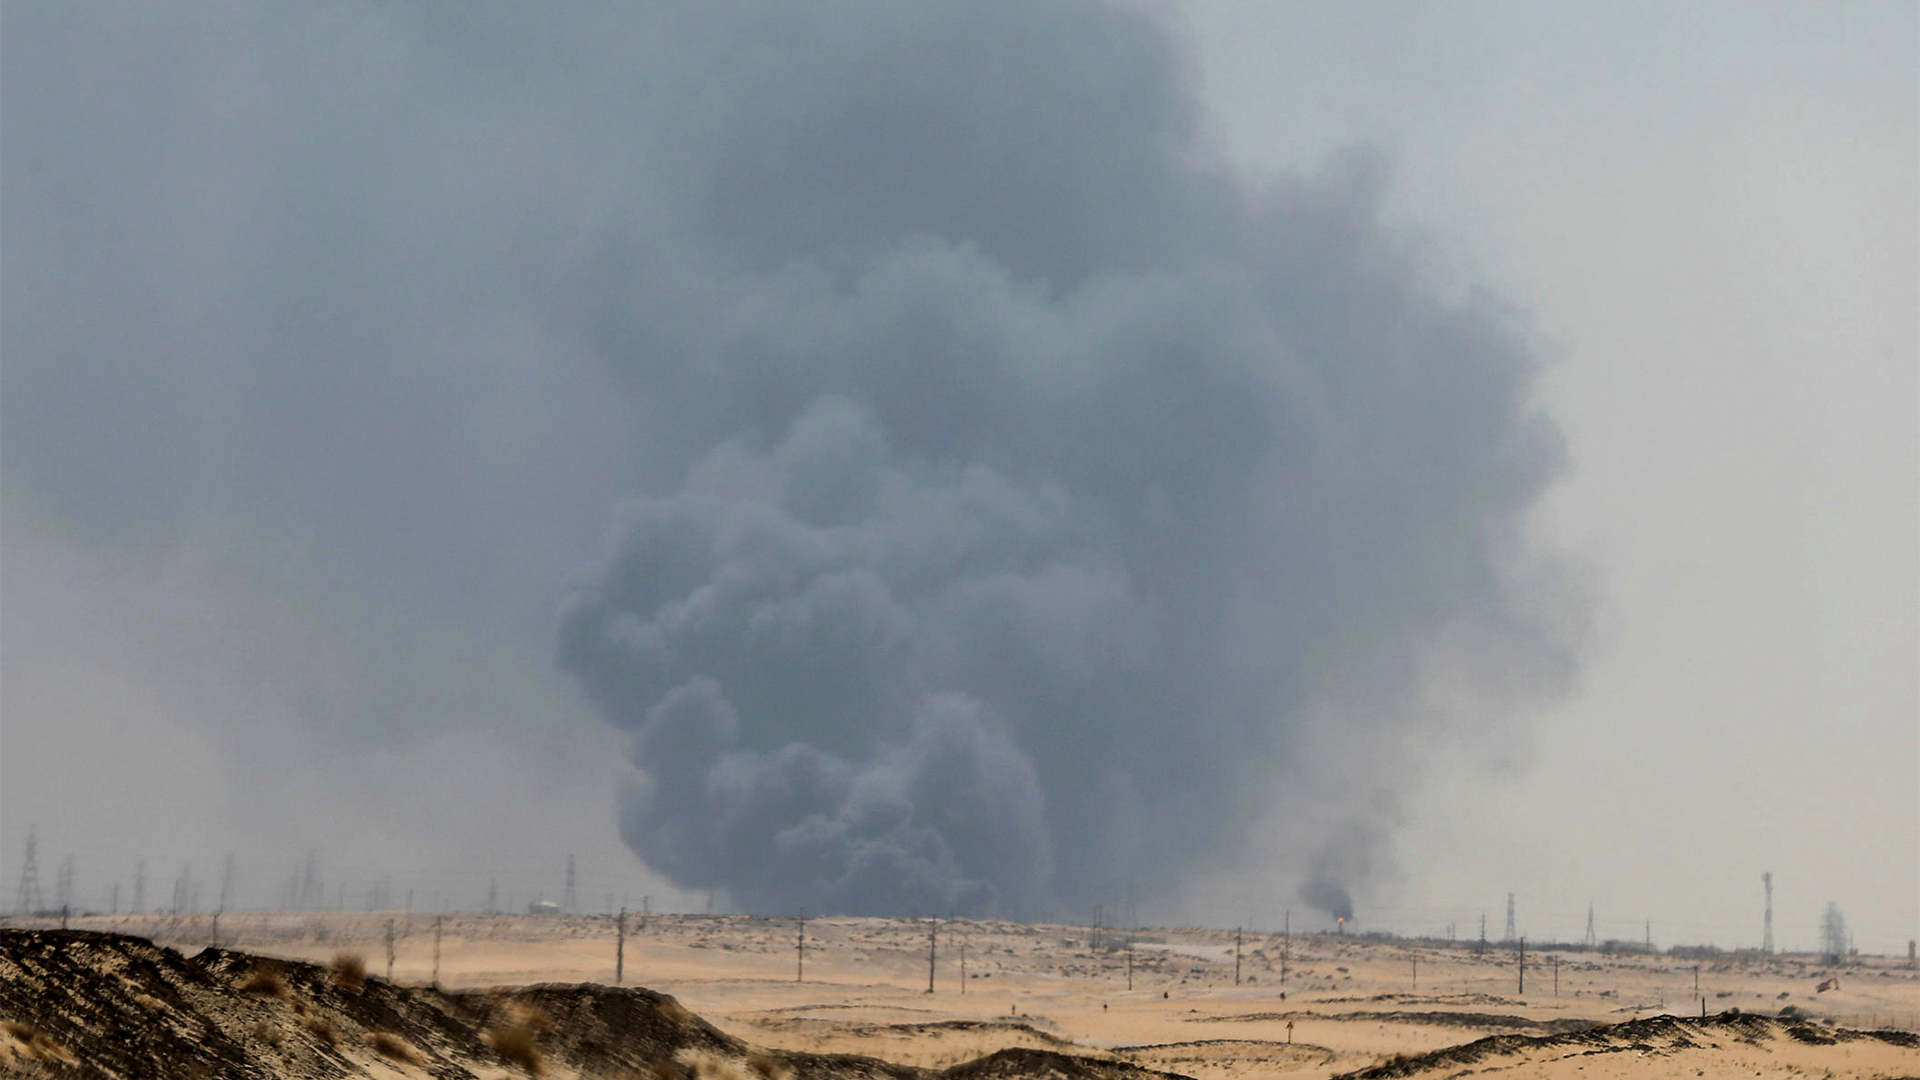 Rauchschwaden am Himmel nach dem Drohnenangriff auf eine Ölraffinerie | REUTERS